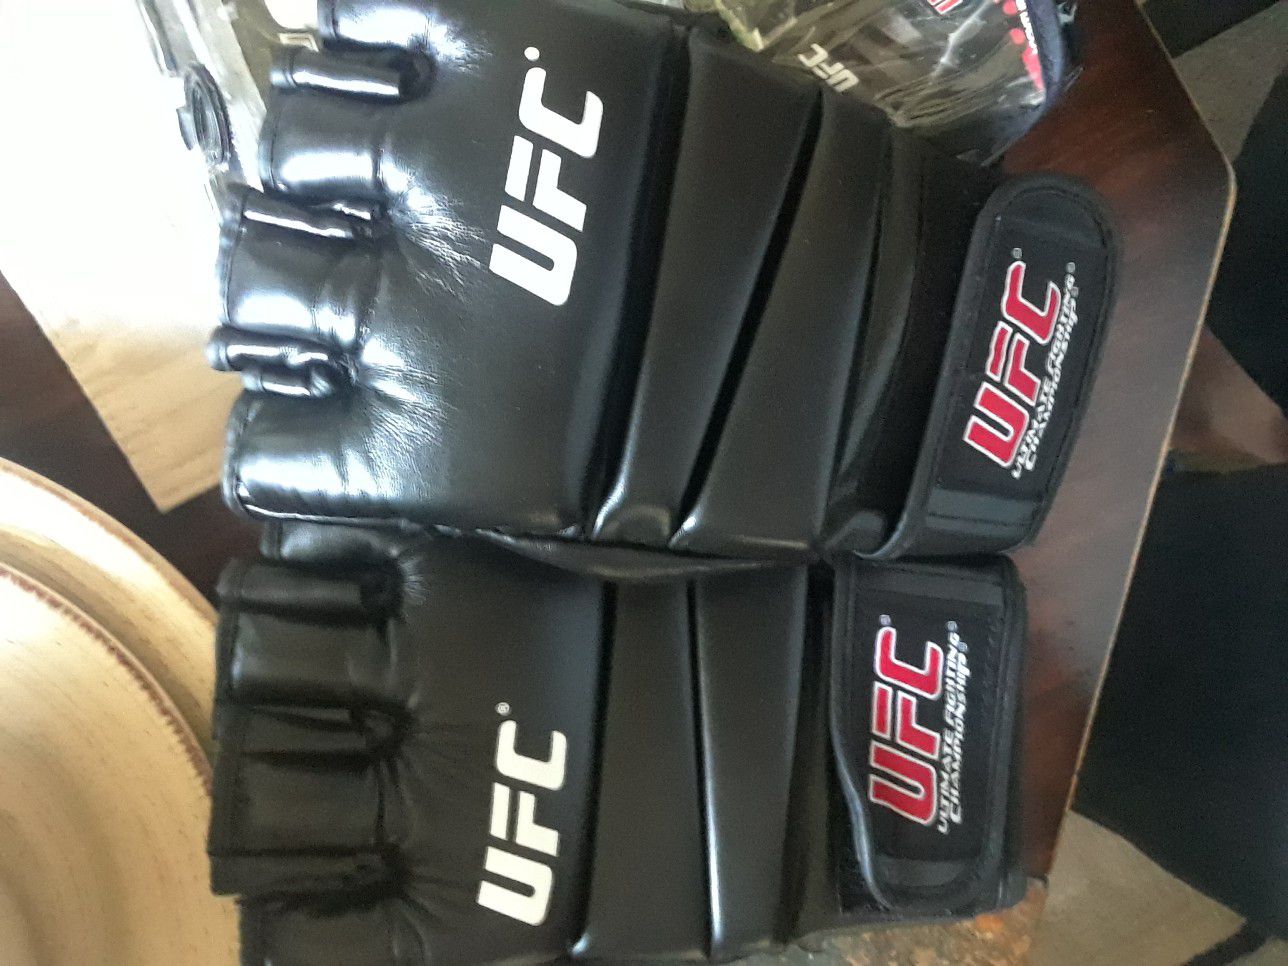 Ufc gloves